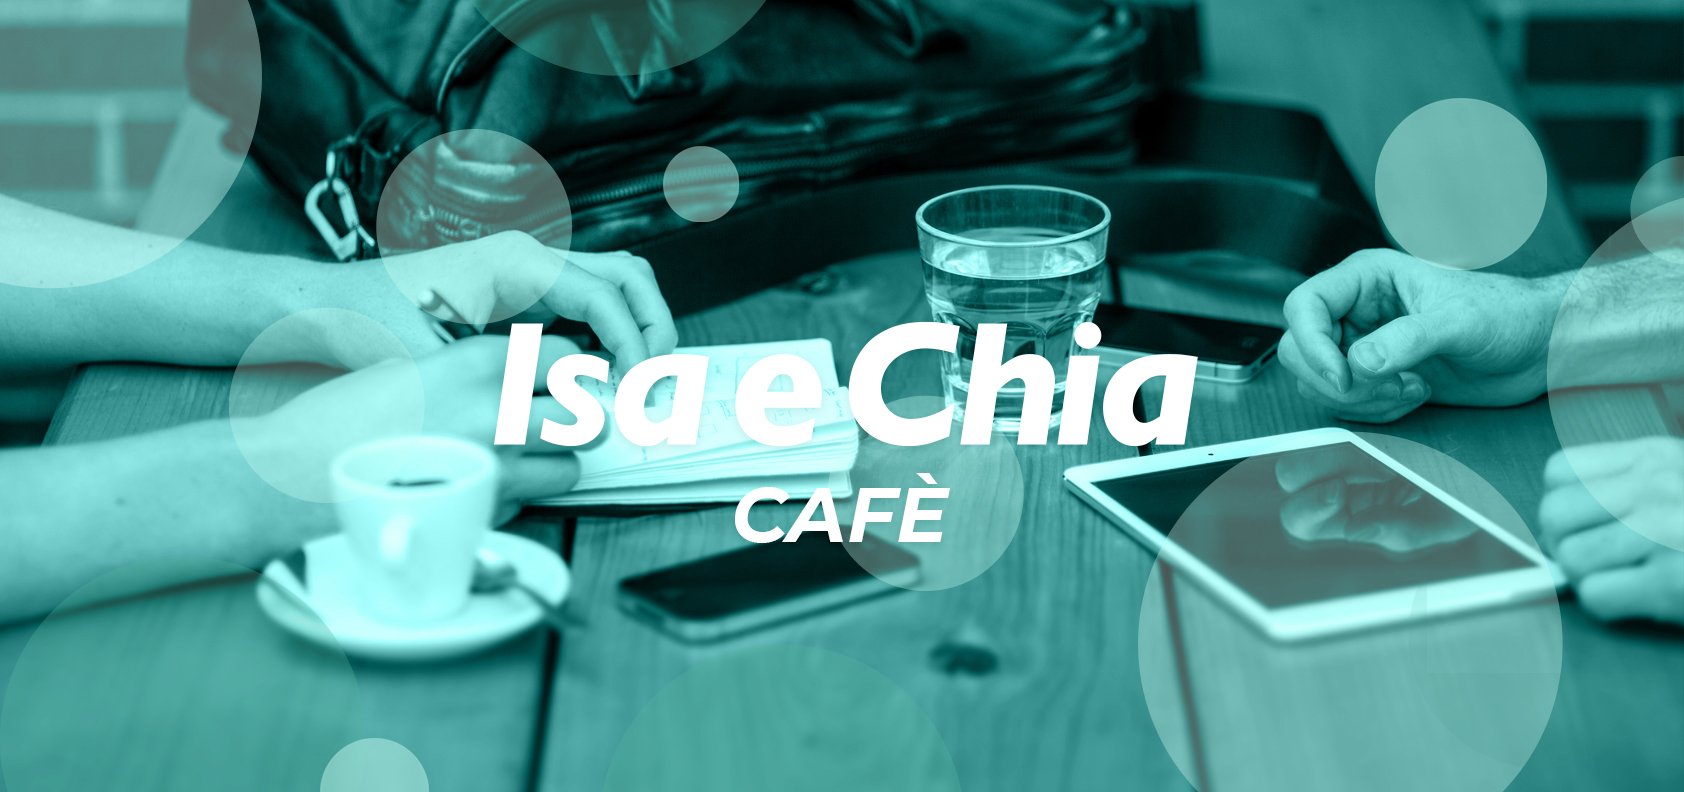 Isa e Chia Cafè, l’angolo delle chiacchiere in libertà (17/06/22)